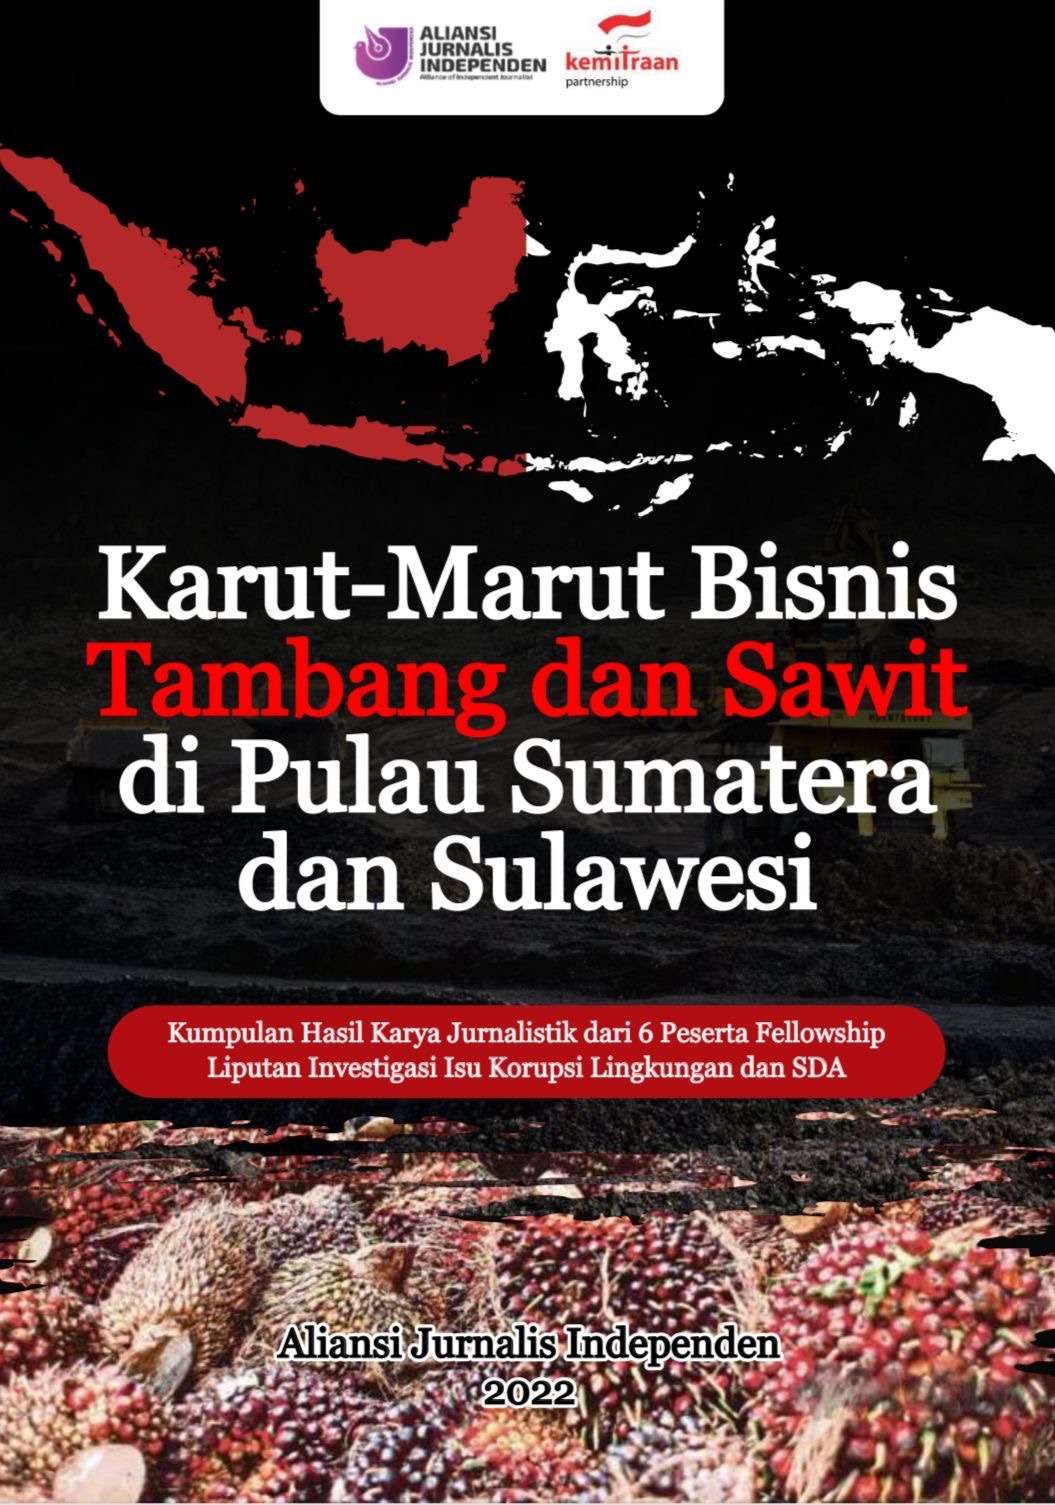 Karut-Marut Bisnis Tambang dan Sawit di Pulau Sumatera dan Sulawesi